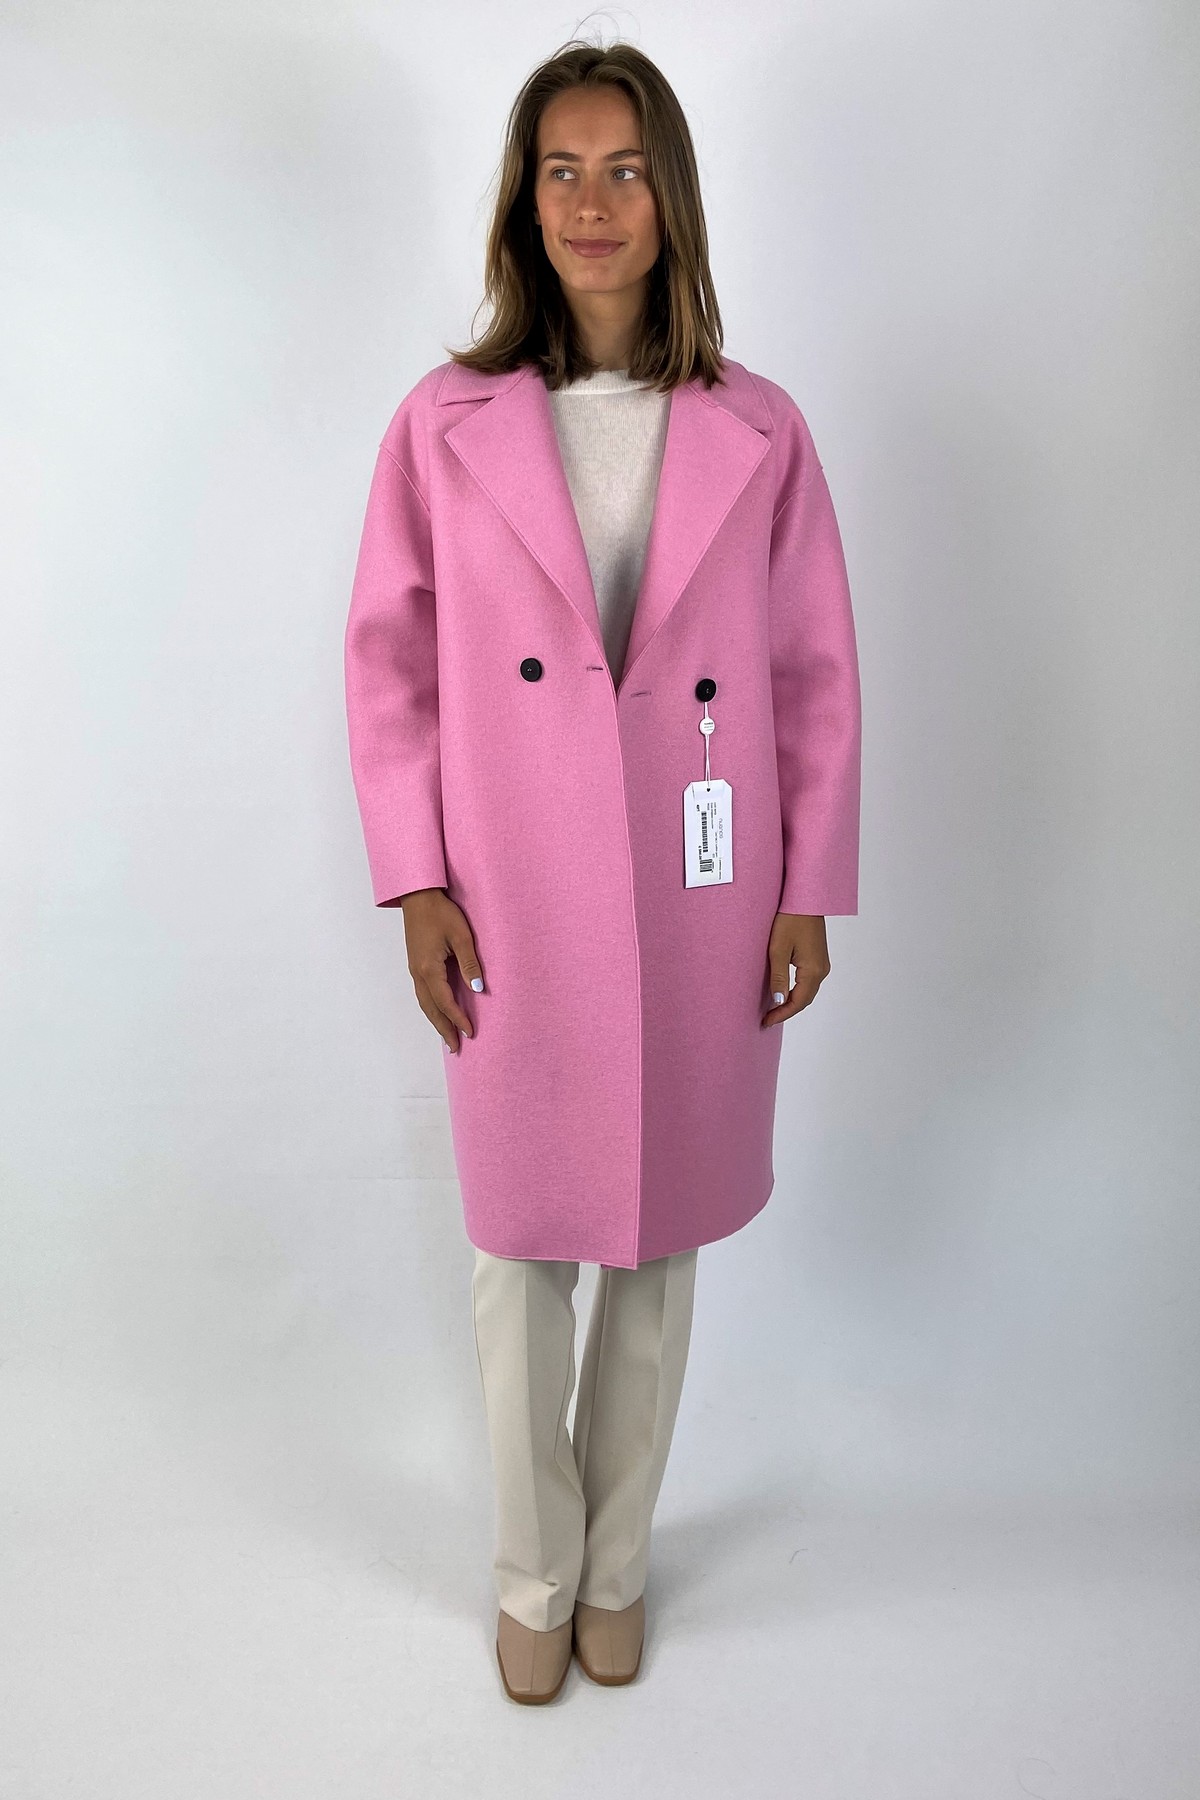 Coat dropped shoulder in de kleur roze van het merk Harris Wharf